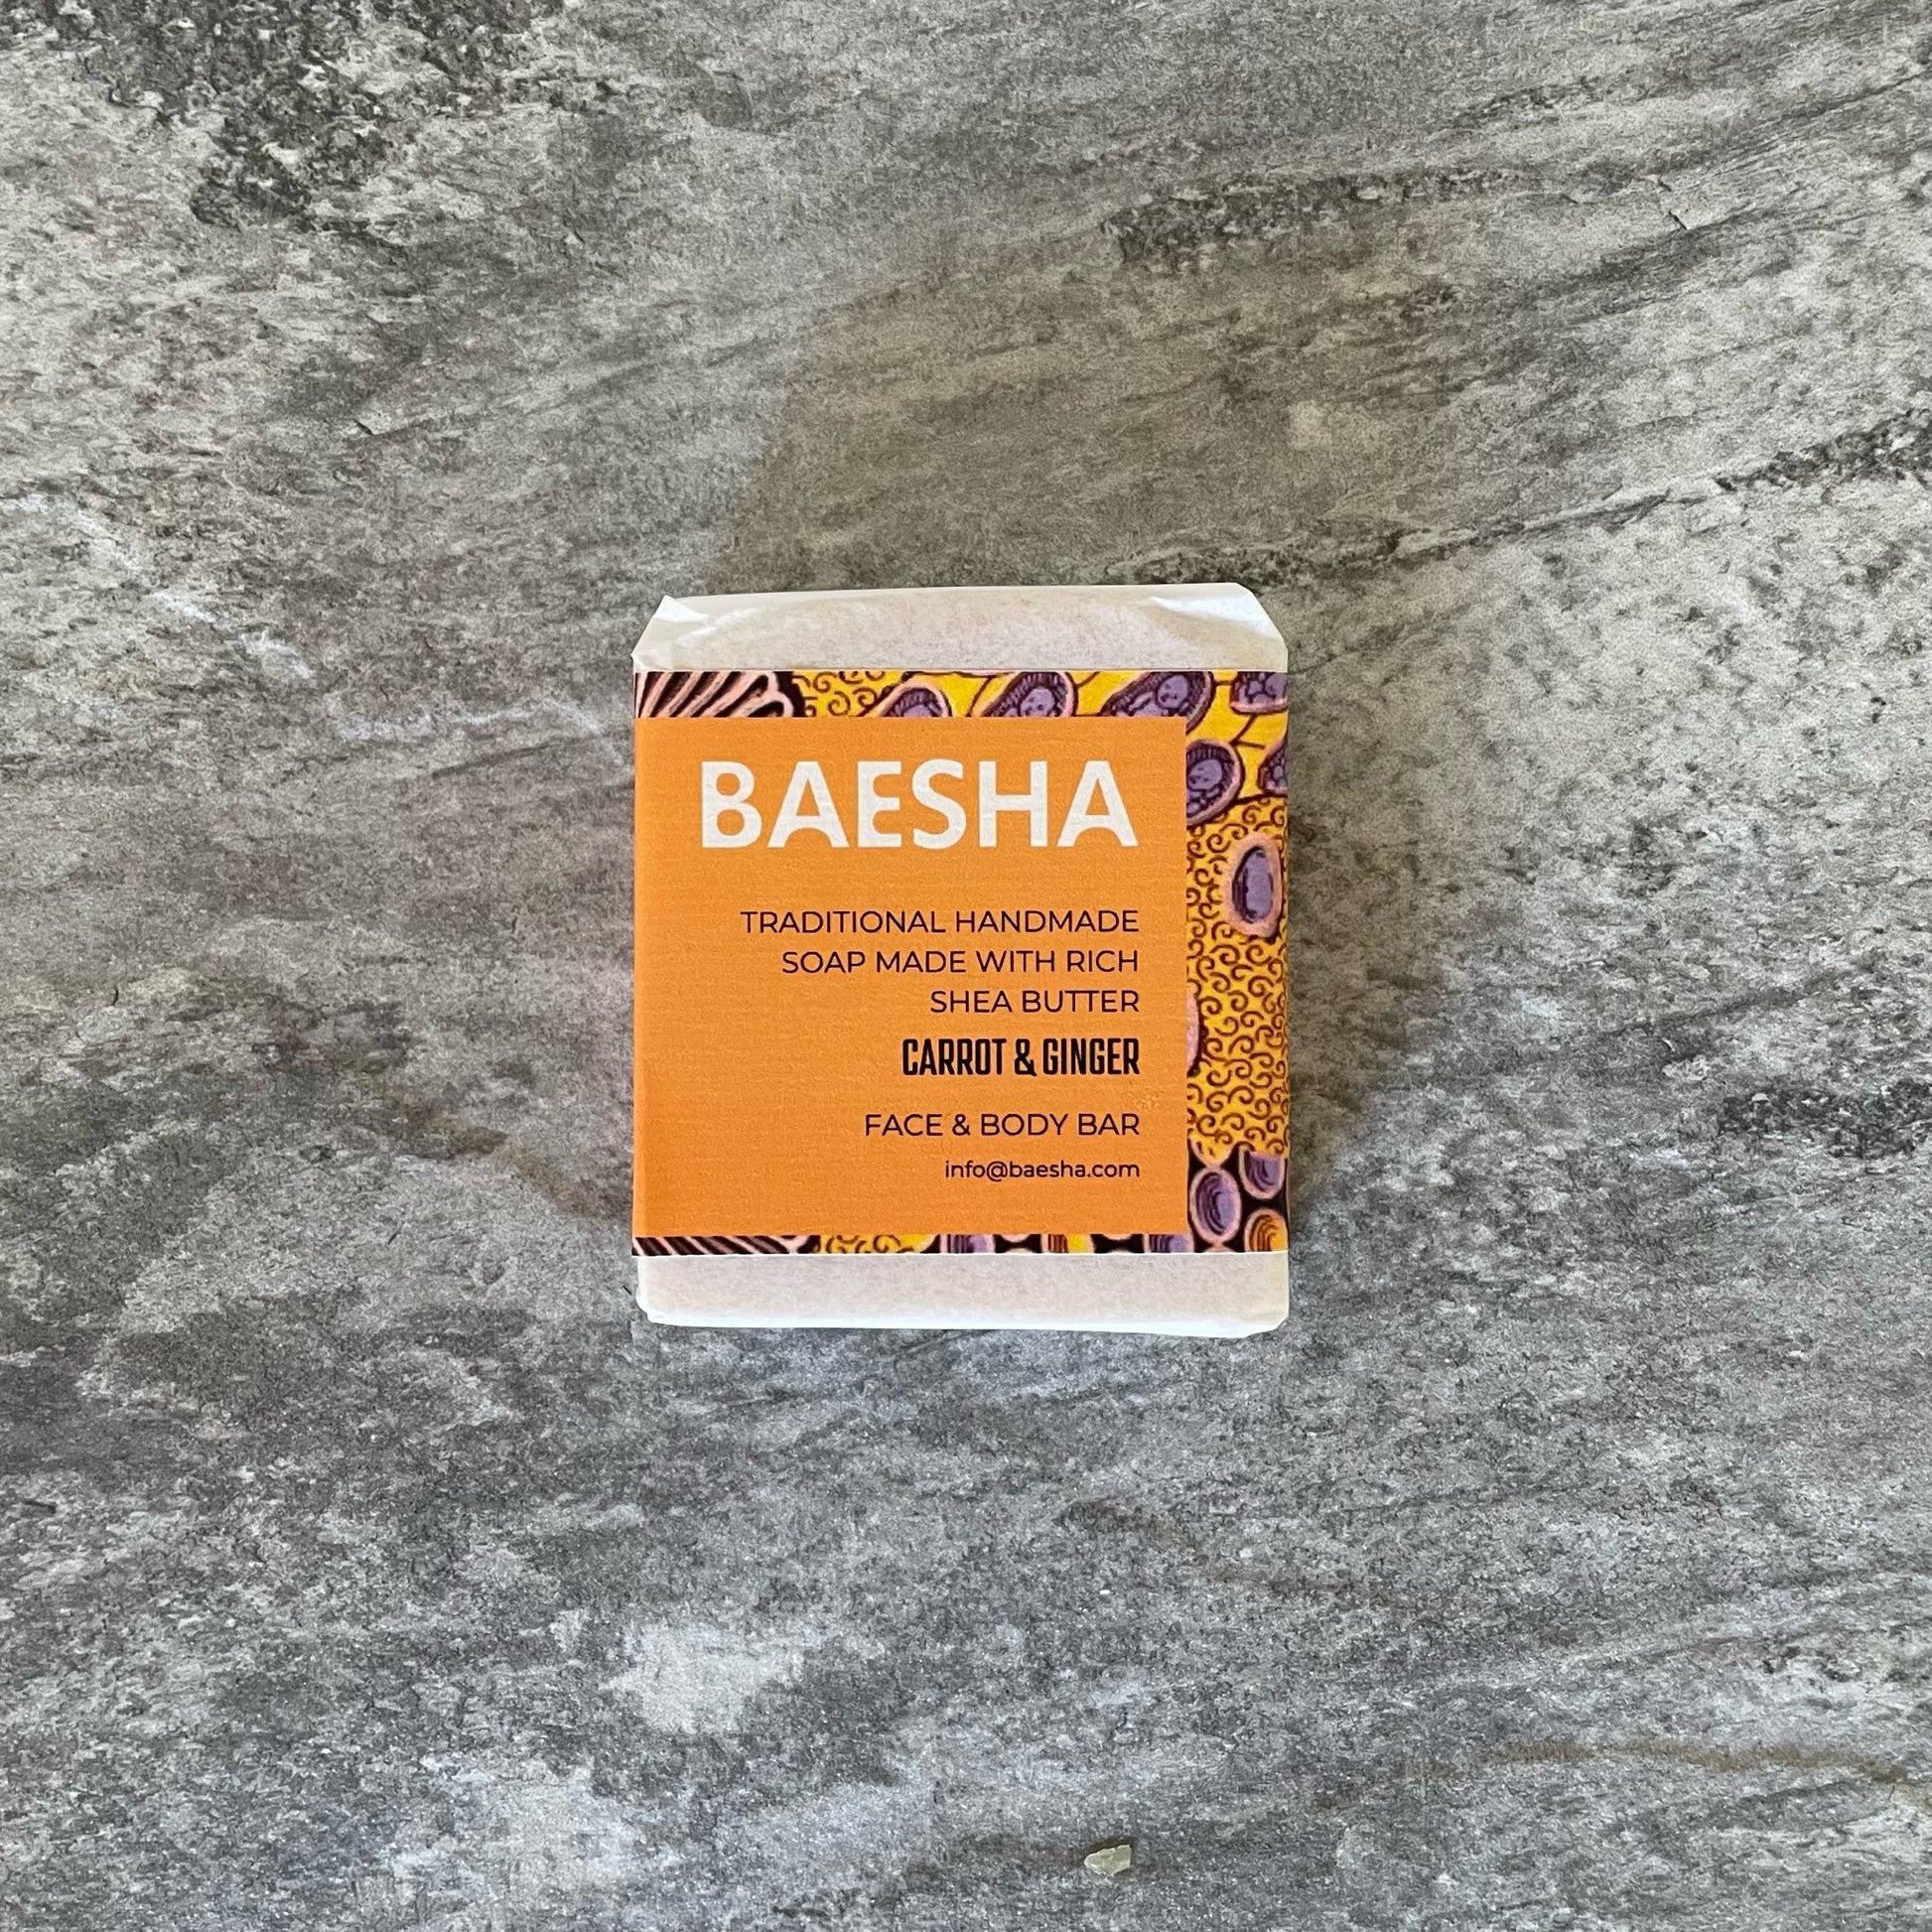 Gifting - Aromatic + Botanical Soap Box-baesha